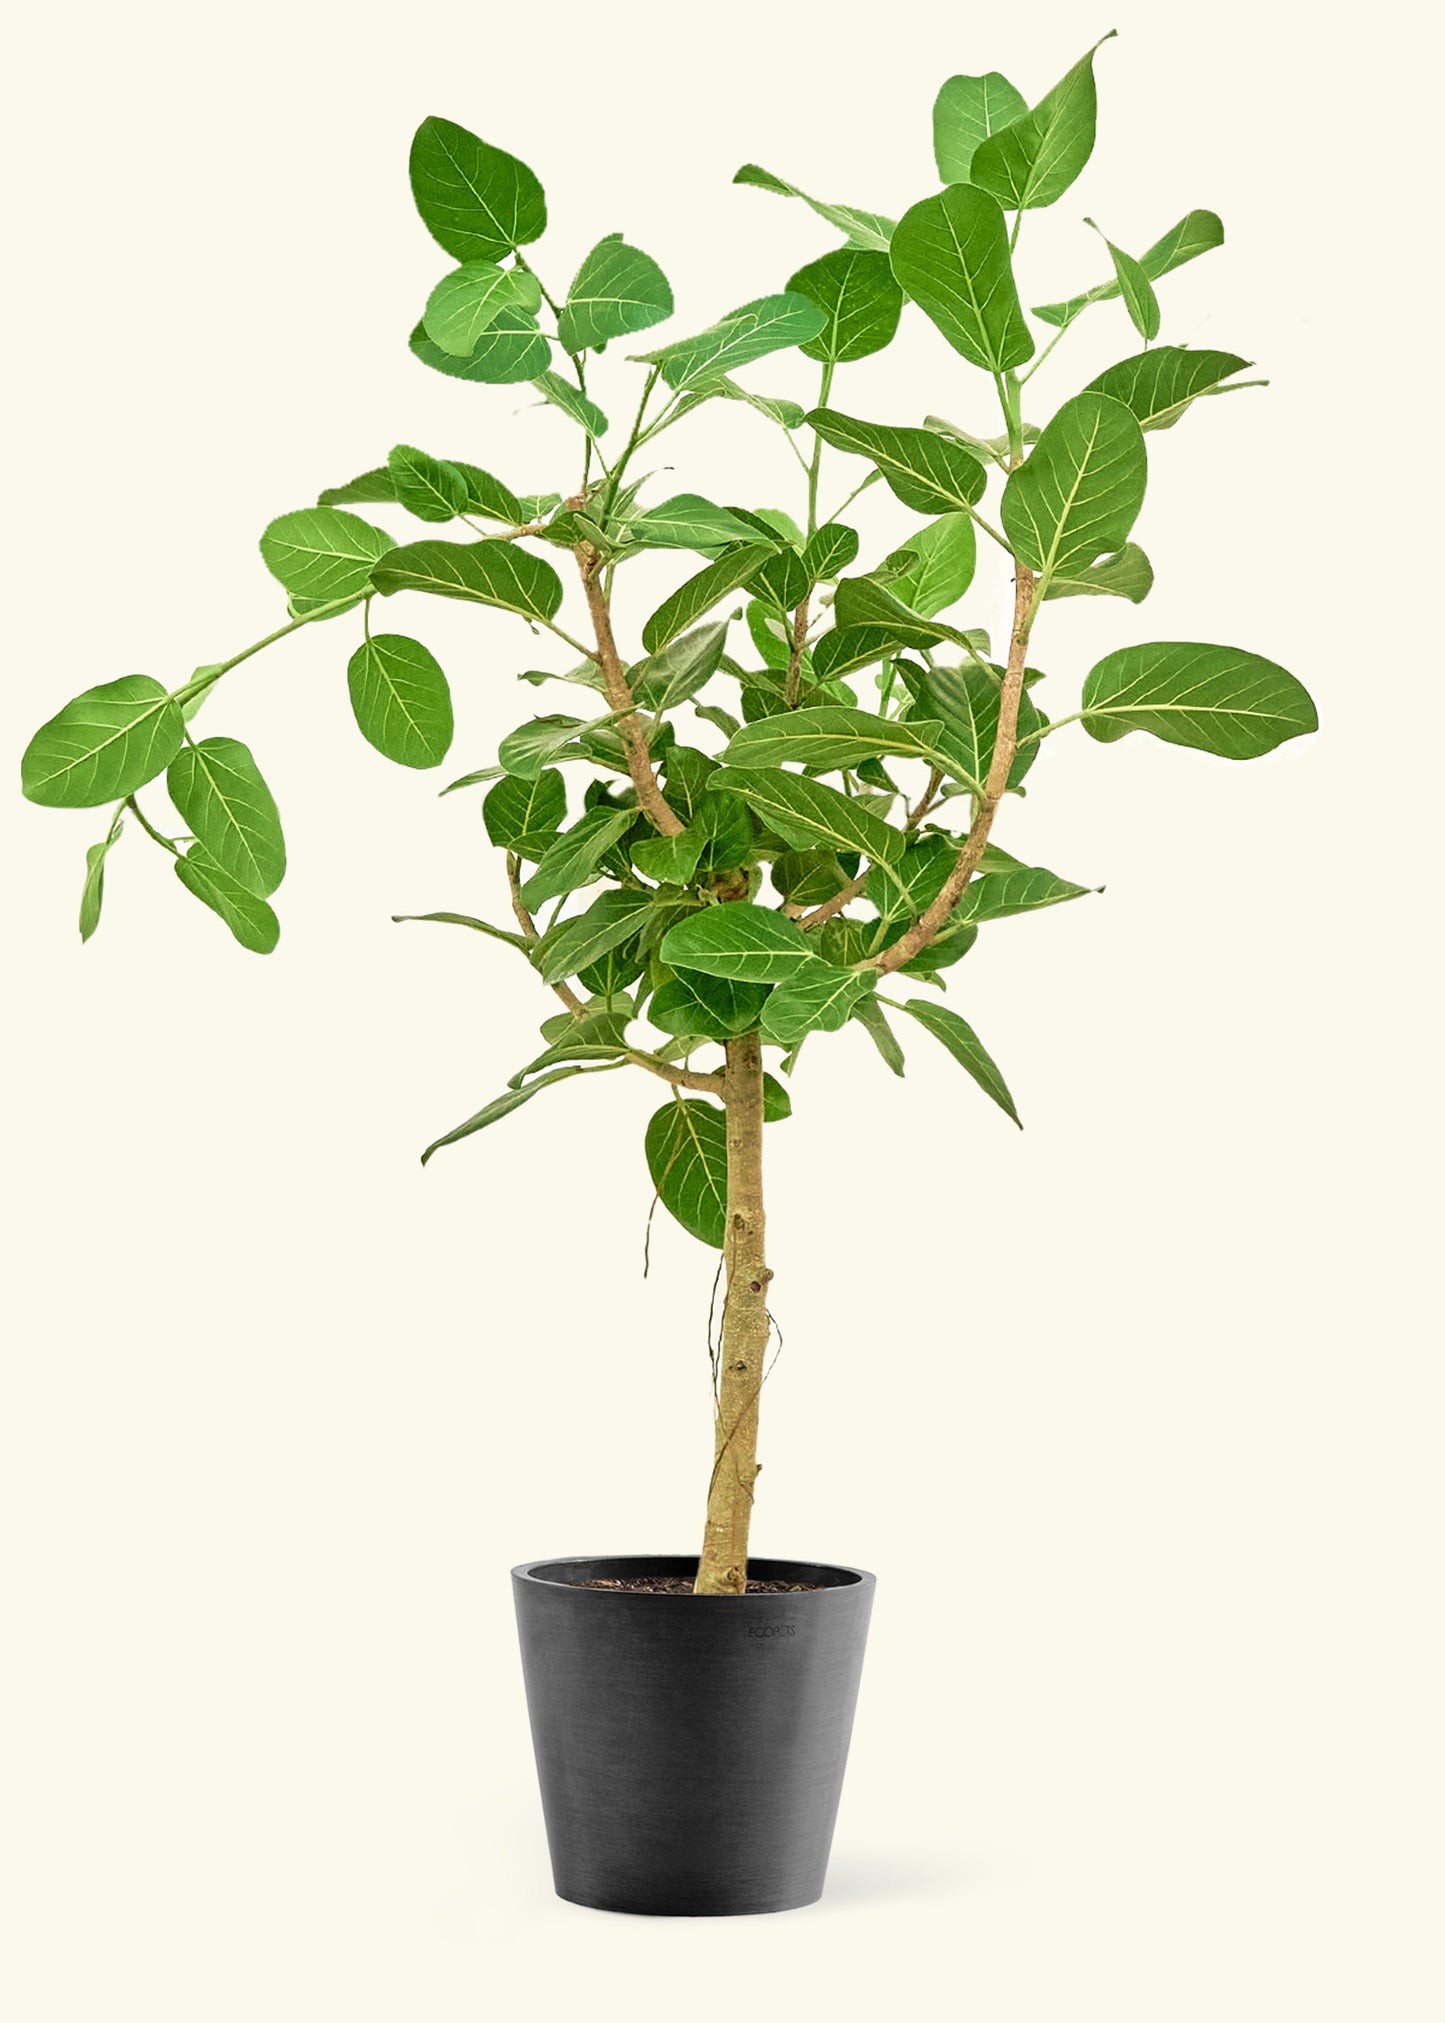 Large Ficus 'Audrey' Plant in a black pot.